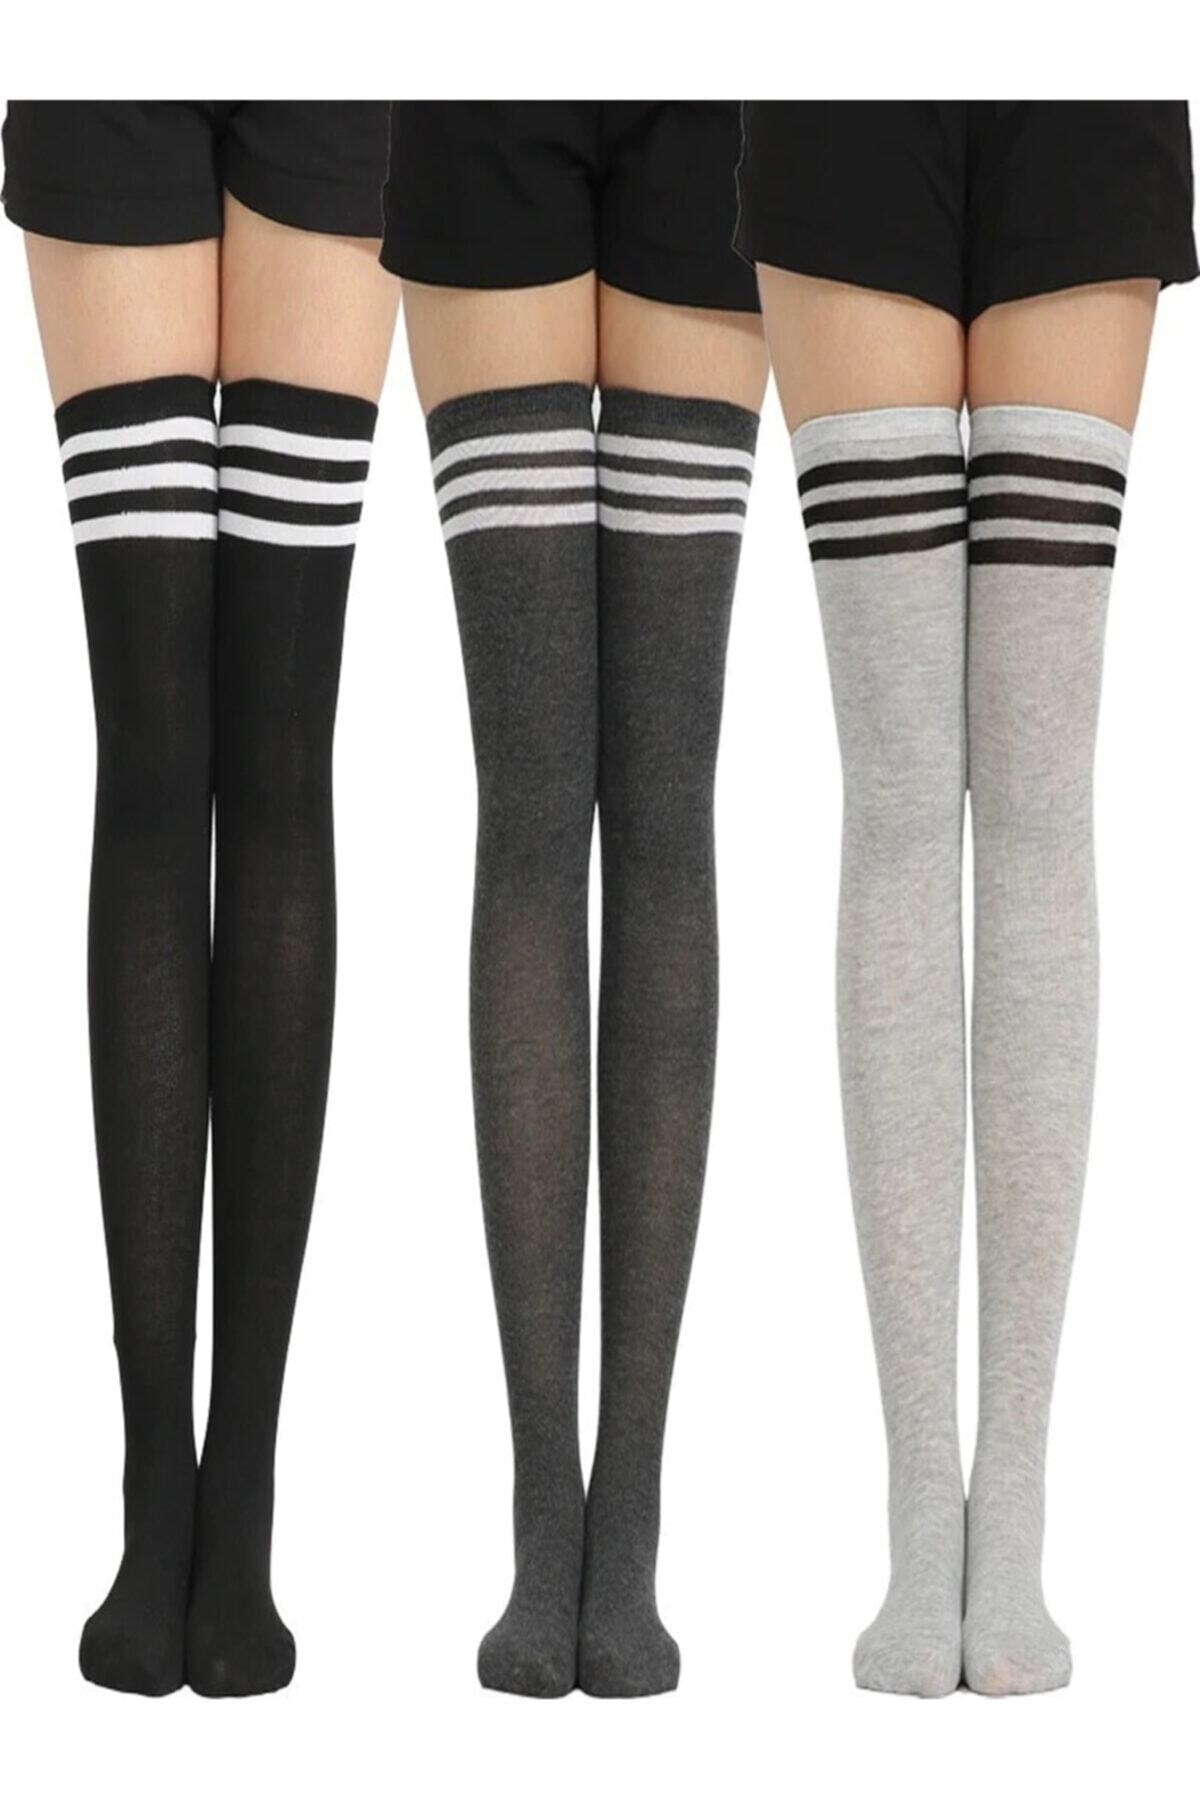 BGK Şık Dizüstü Çizgili Çorap Yeni Trend 3 Adet Siyah-füme-beyaz